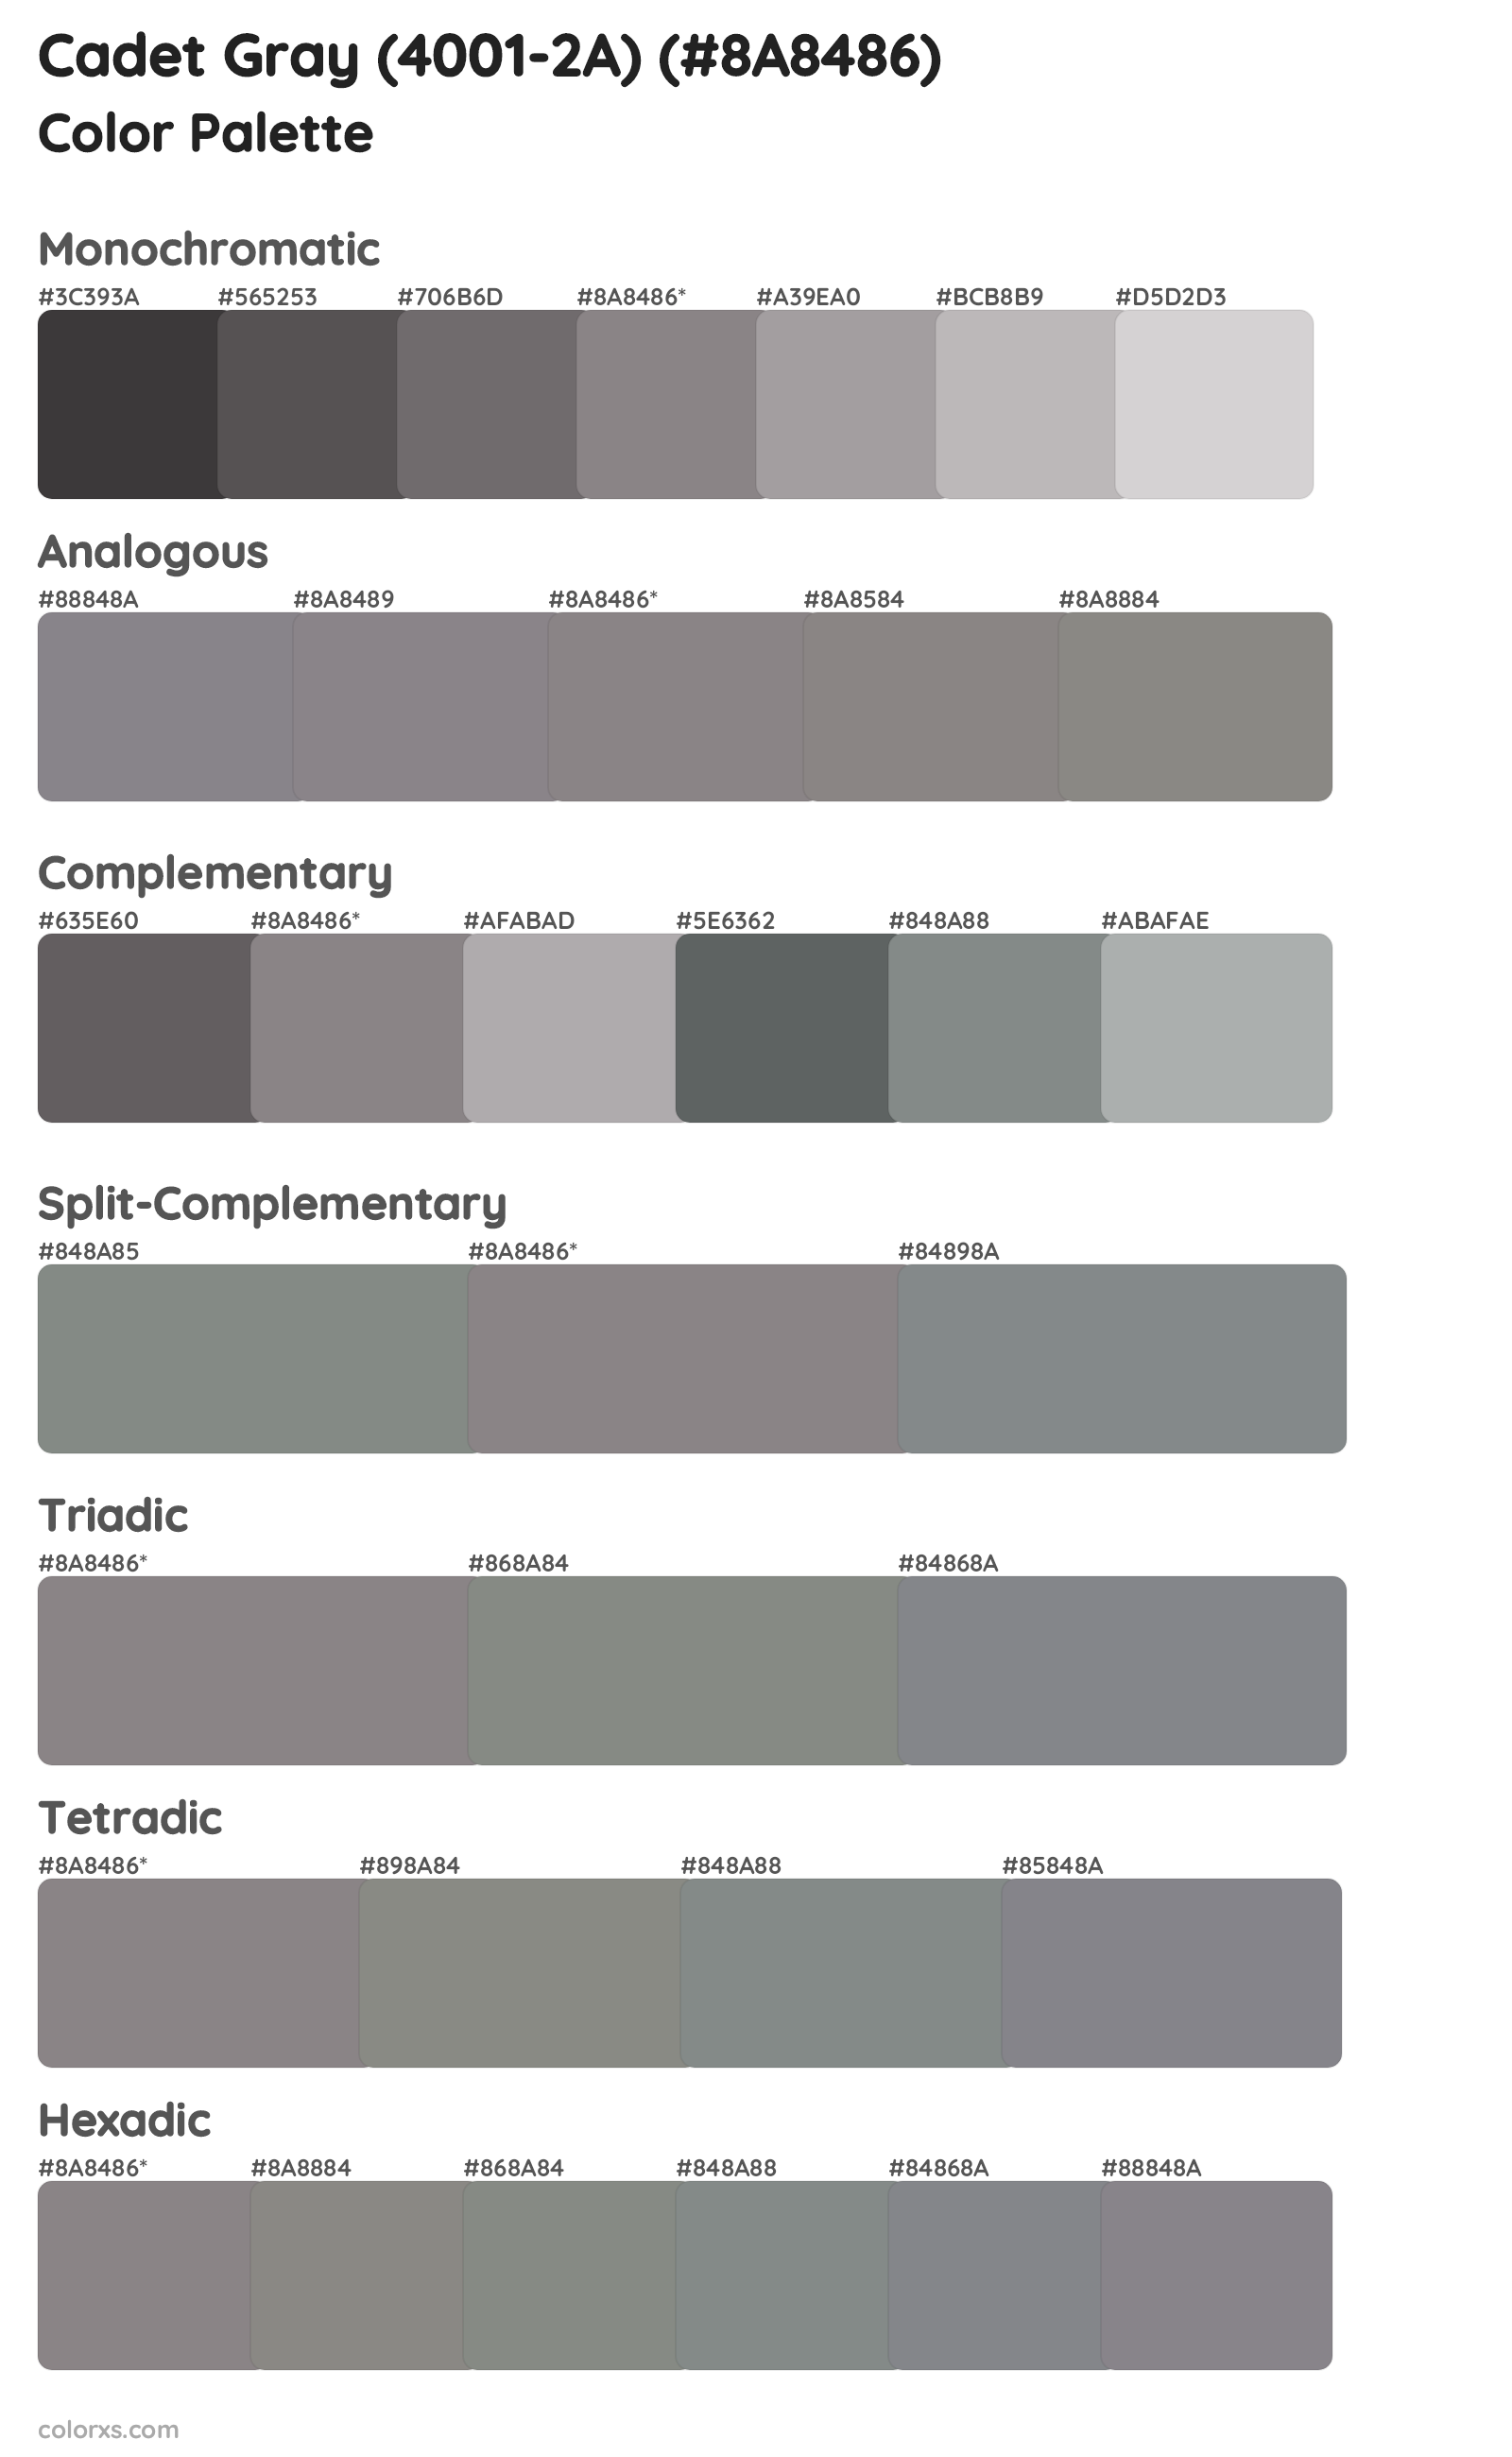 Cadet Gray (4001-2A) Color Scheme Palettes